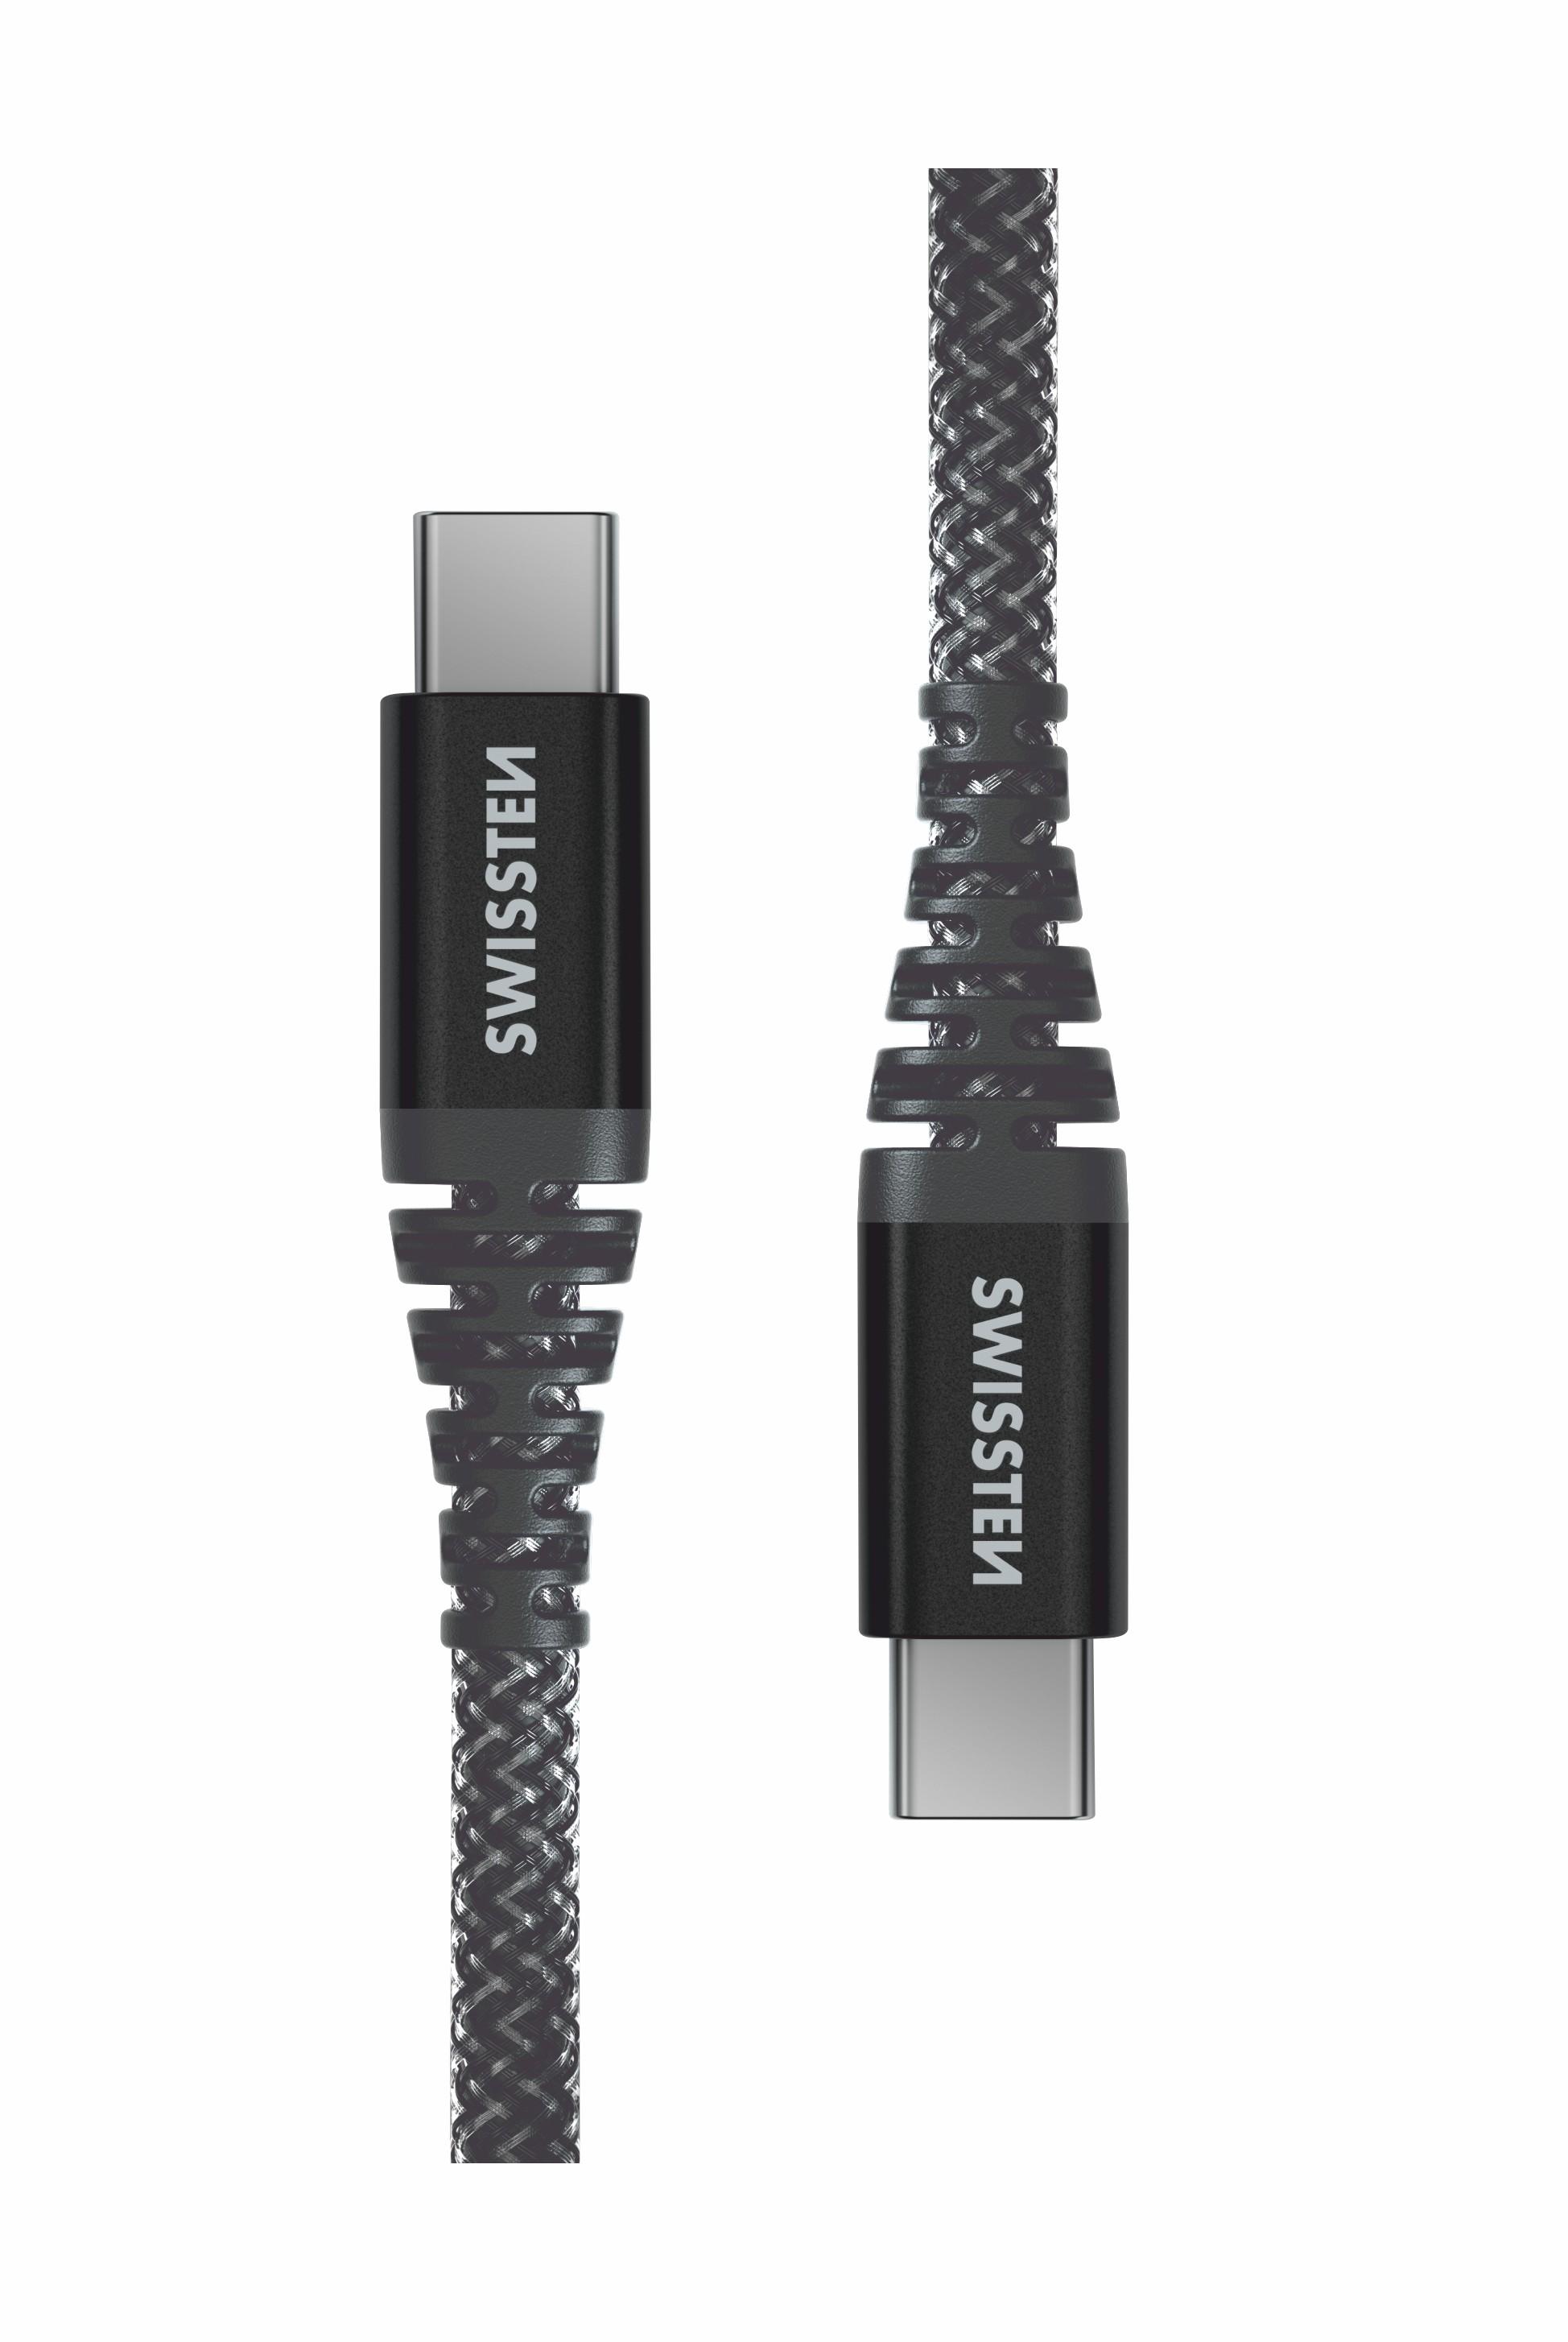 DATA CABLE SWISSTEN KEVLAR USB-C / USB-C 1.5 M ANTRACIT